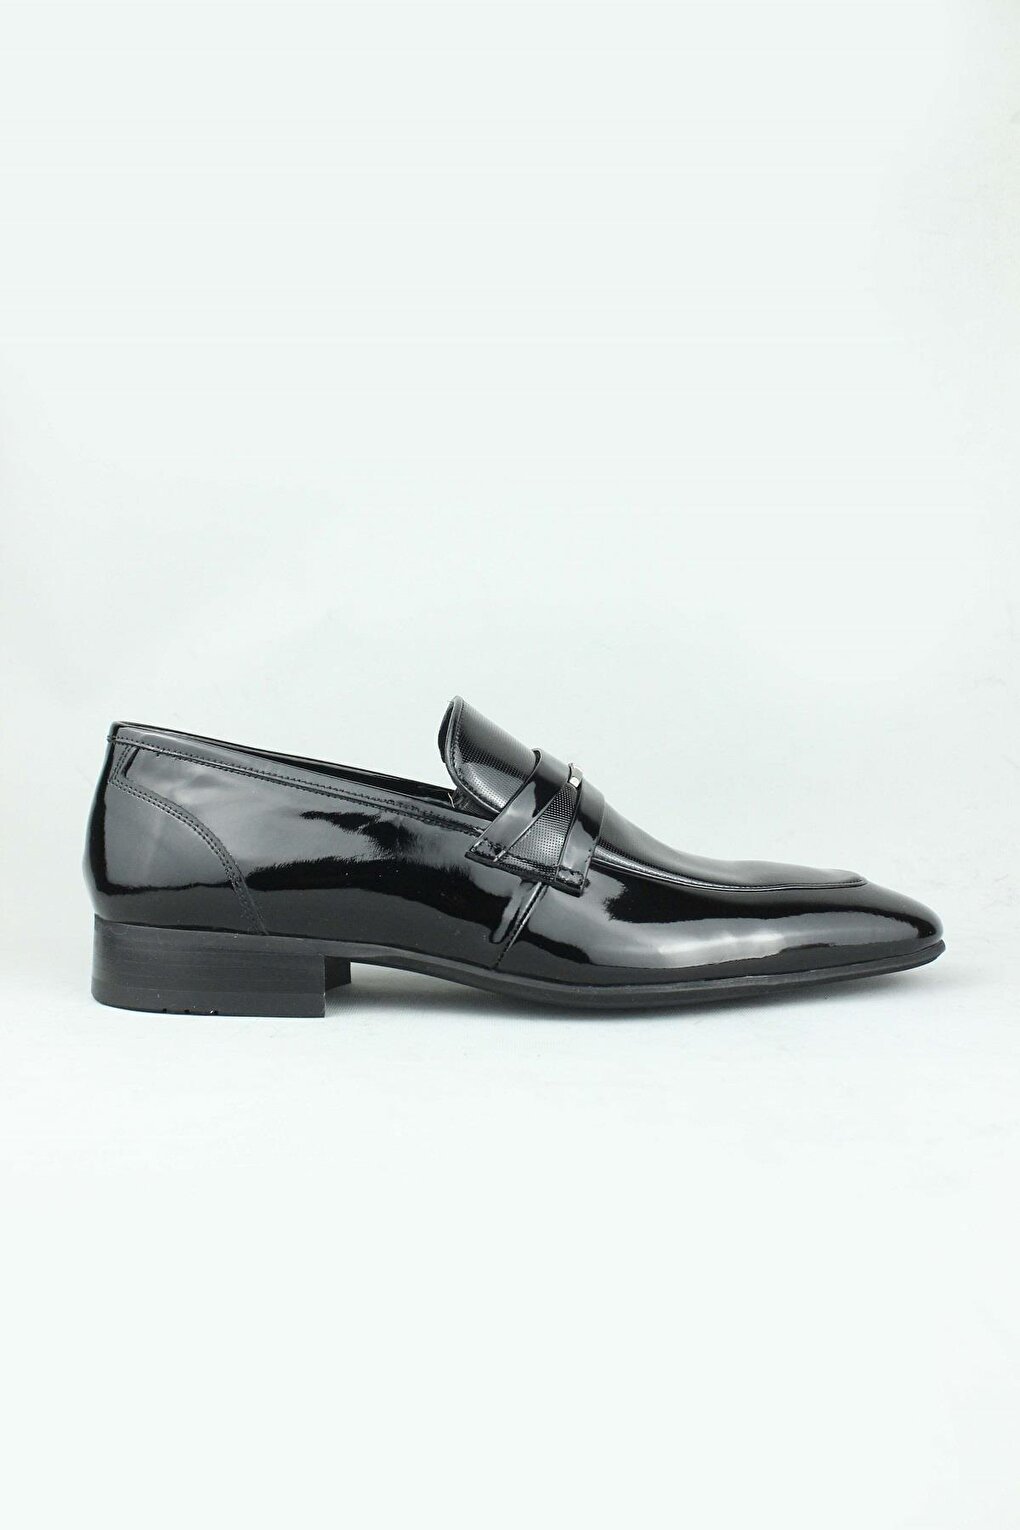 цена Классические мужские лоферы из лакированной кожи Corbel, классические мужские туфли ÖSY Serdar Yeşil